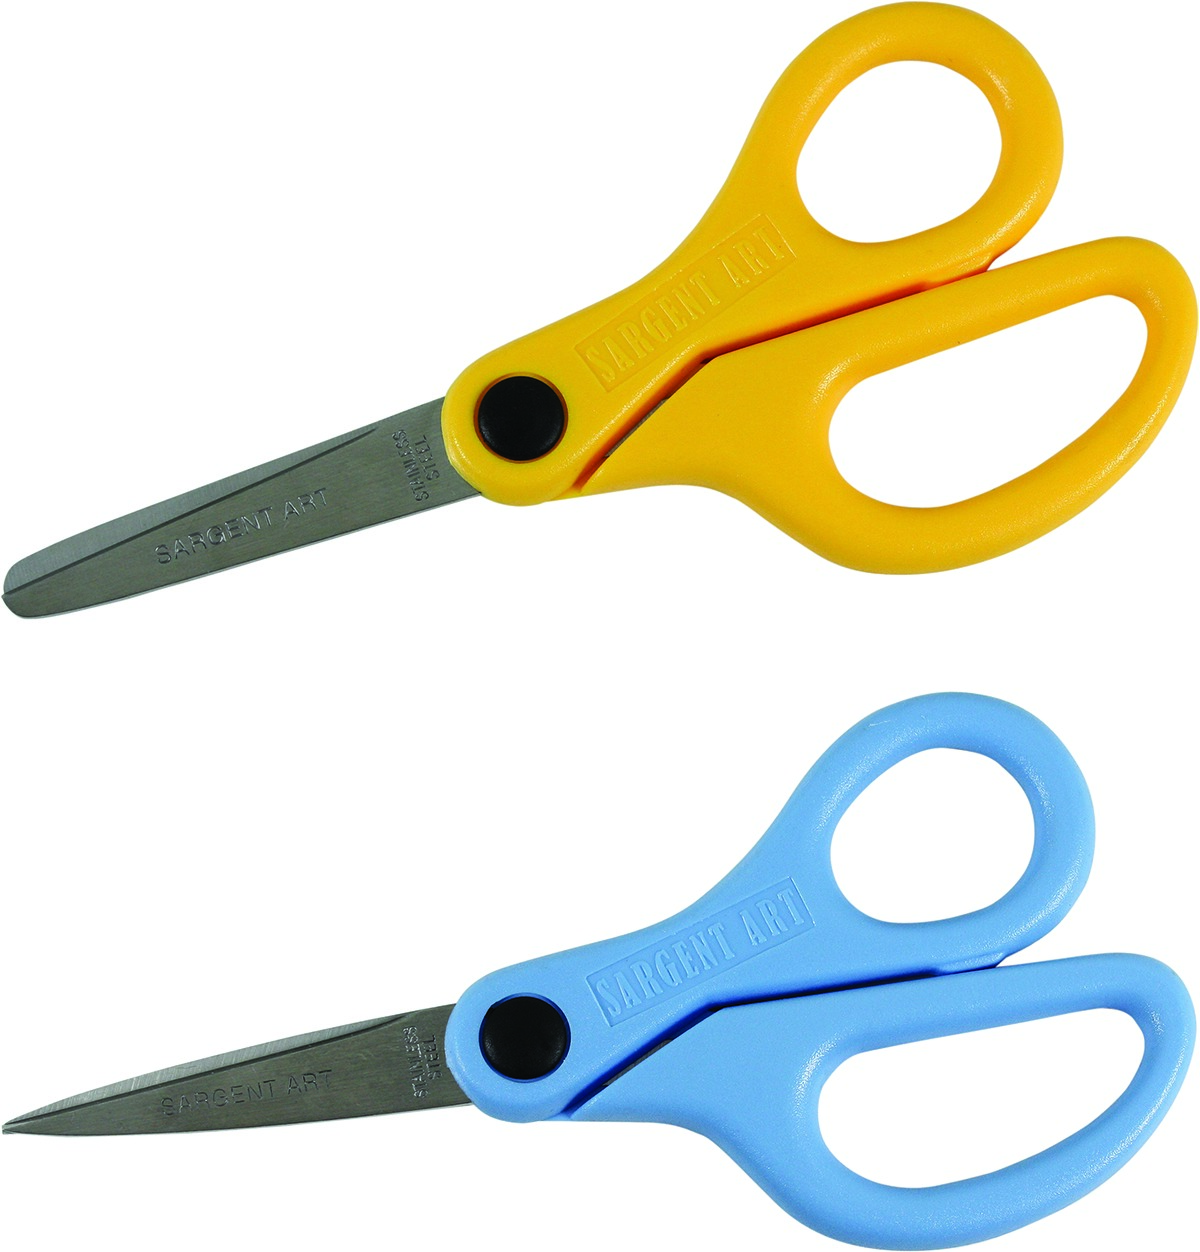 Scissors & Paper Cutting